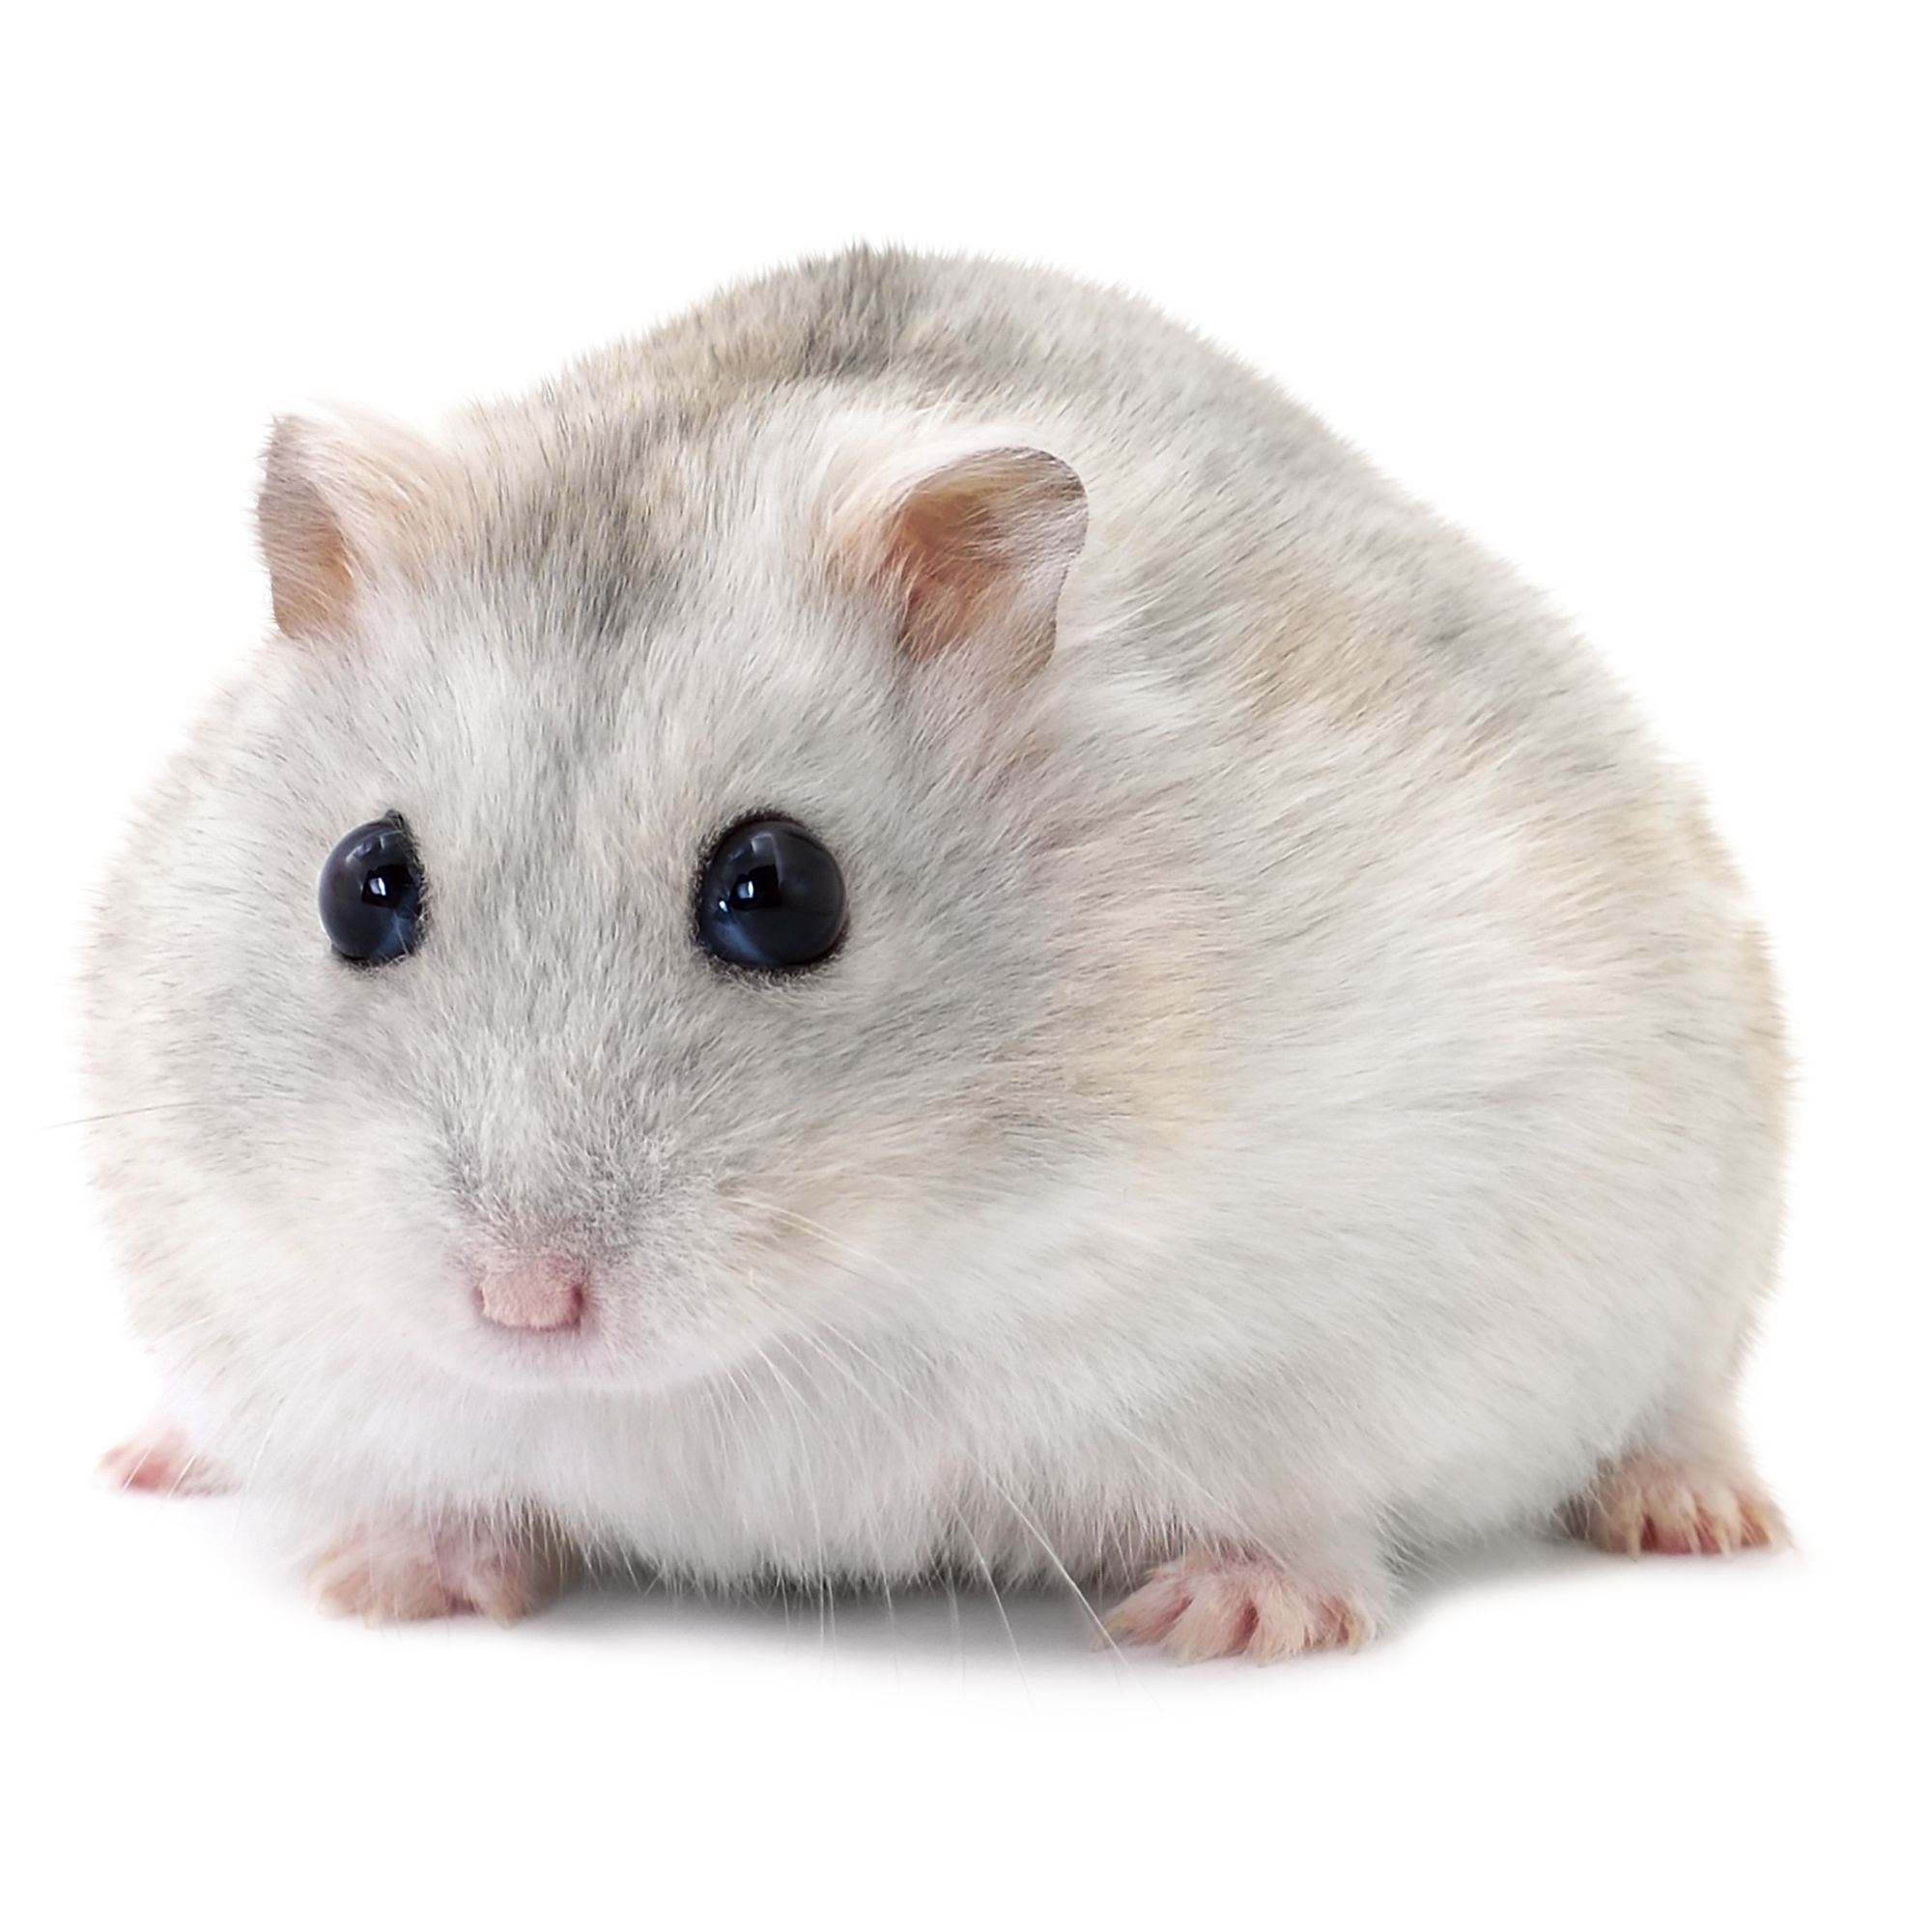 Russian Dwarf Hamster Small Pet Hamsters Guinea Pigs More Petsmart,Corian Vs Granite Countertops